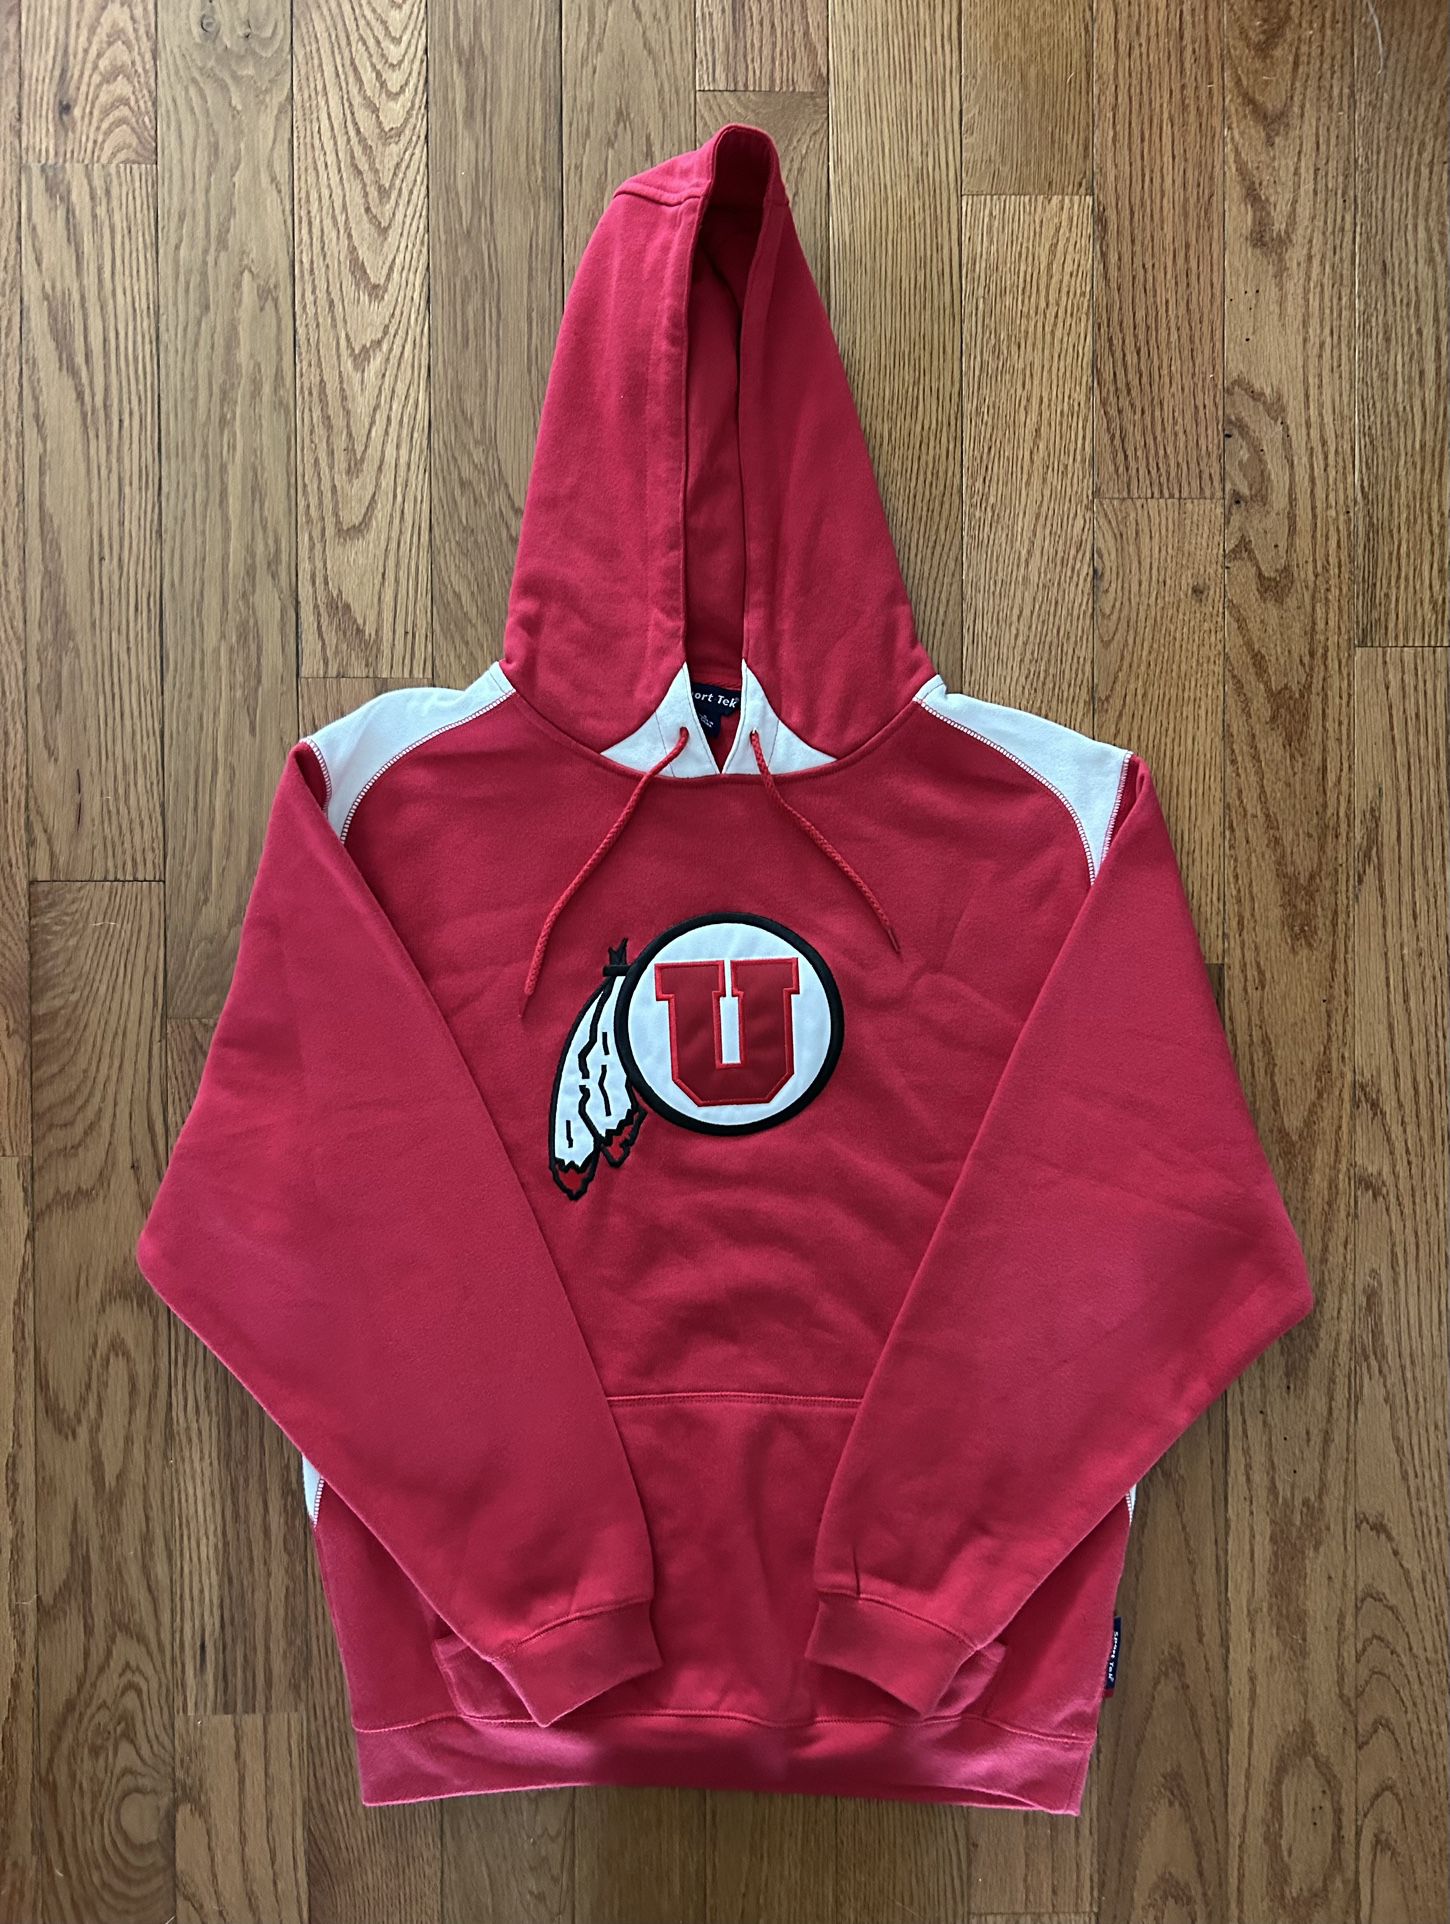 Utah Utes Sport-Tek Vintage Sewn Hoodie Size Small